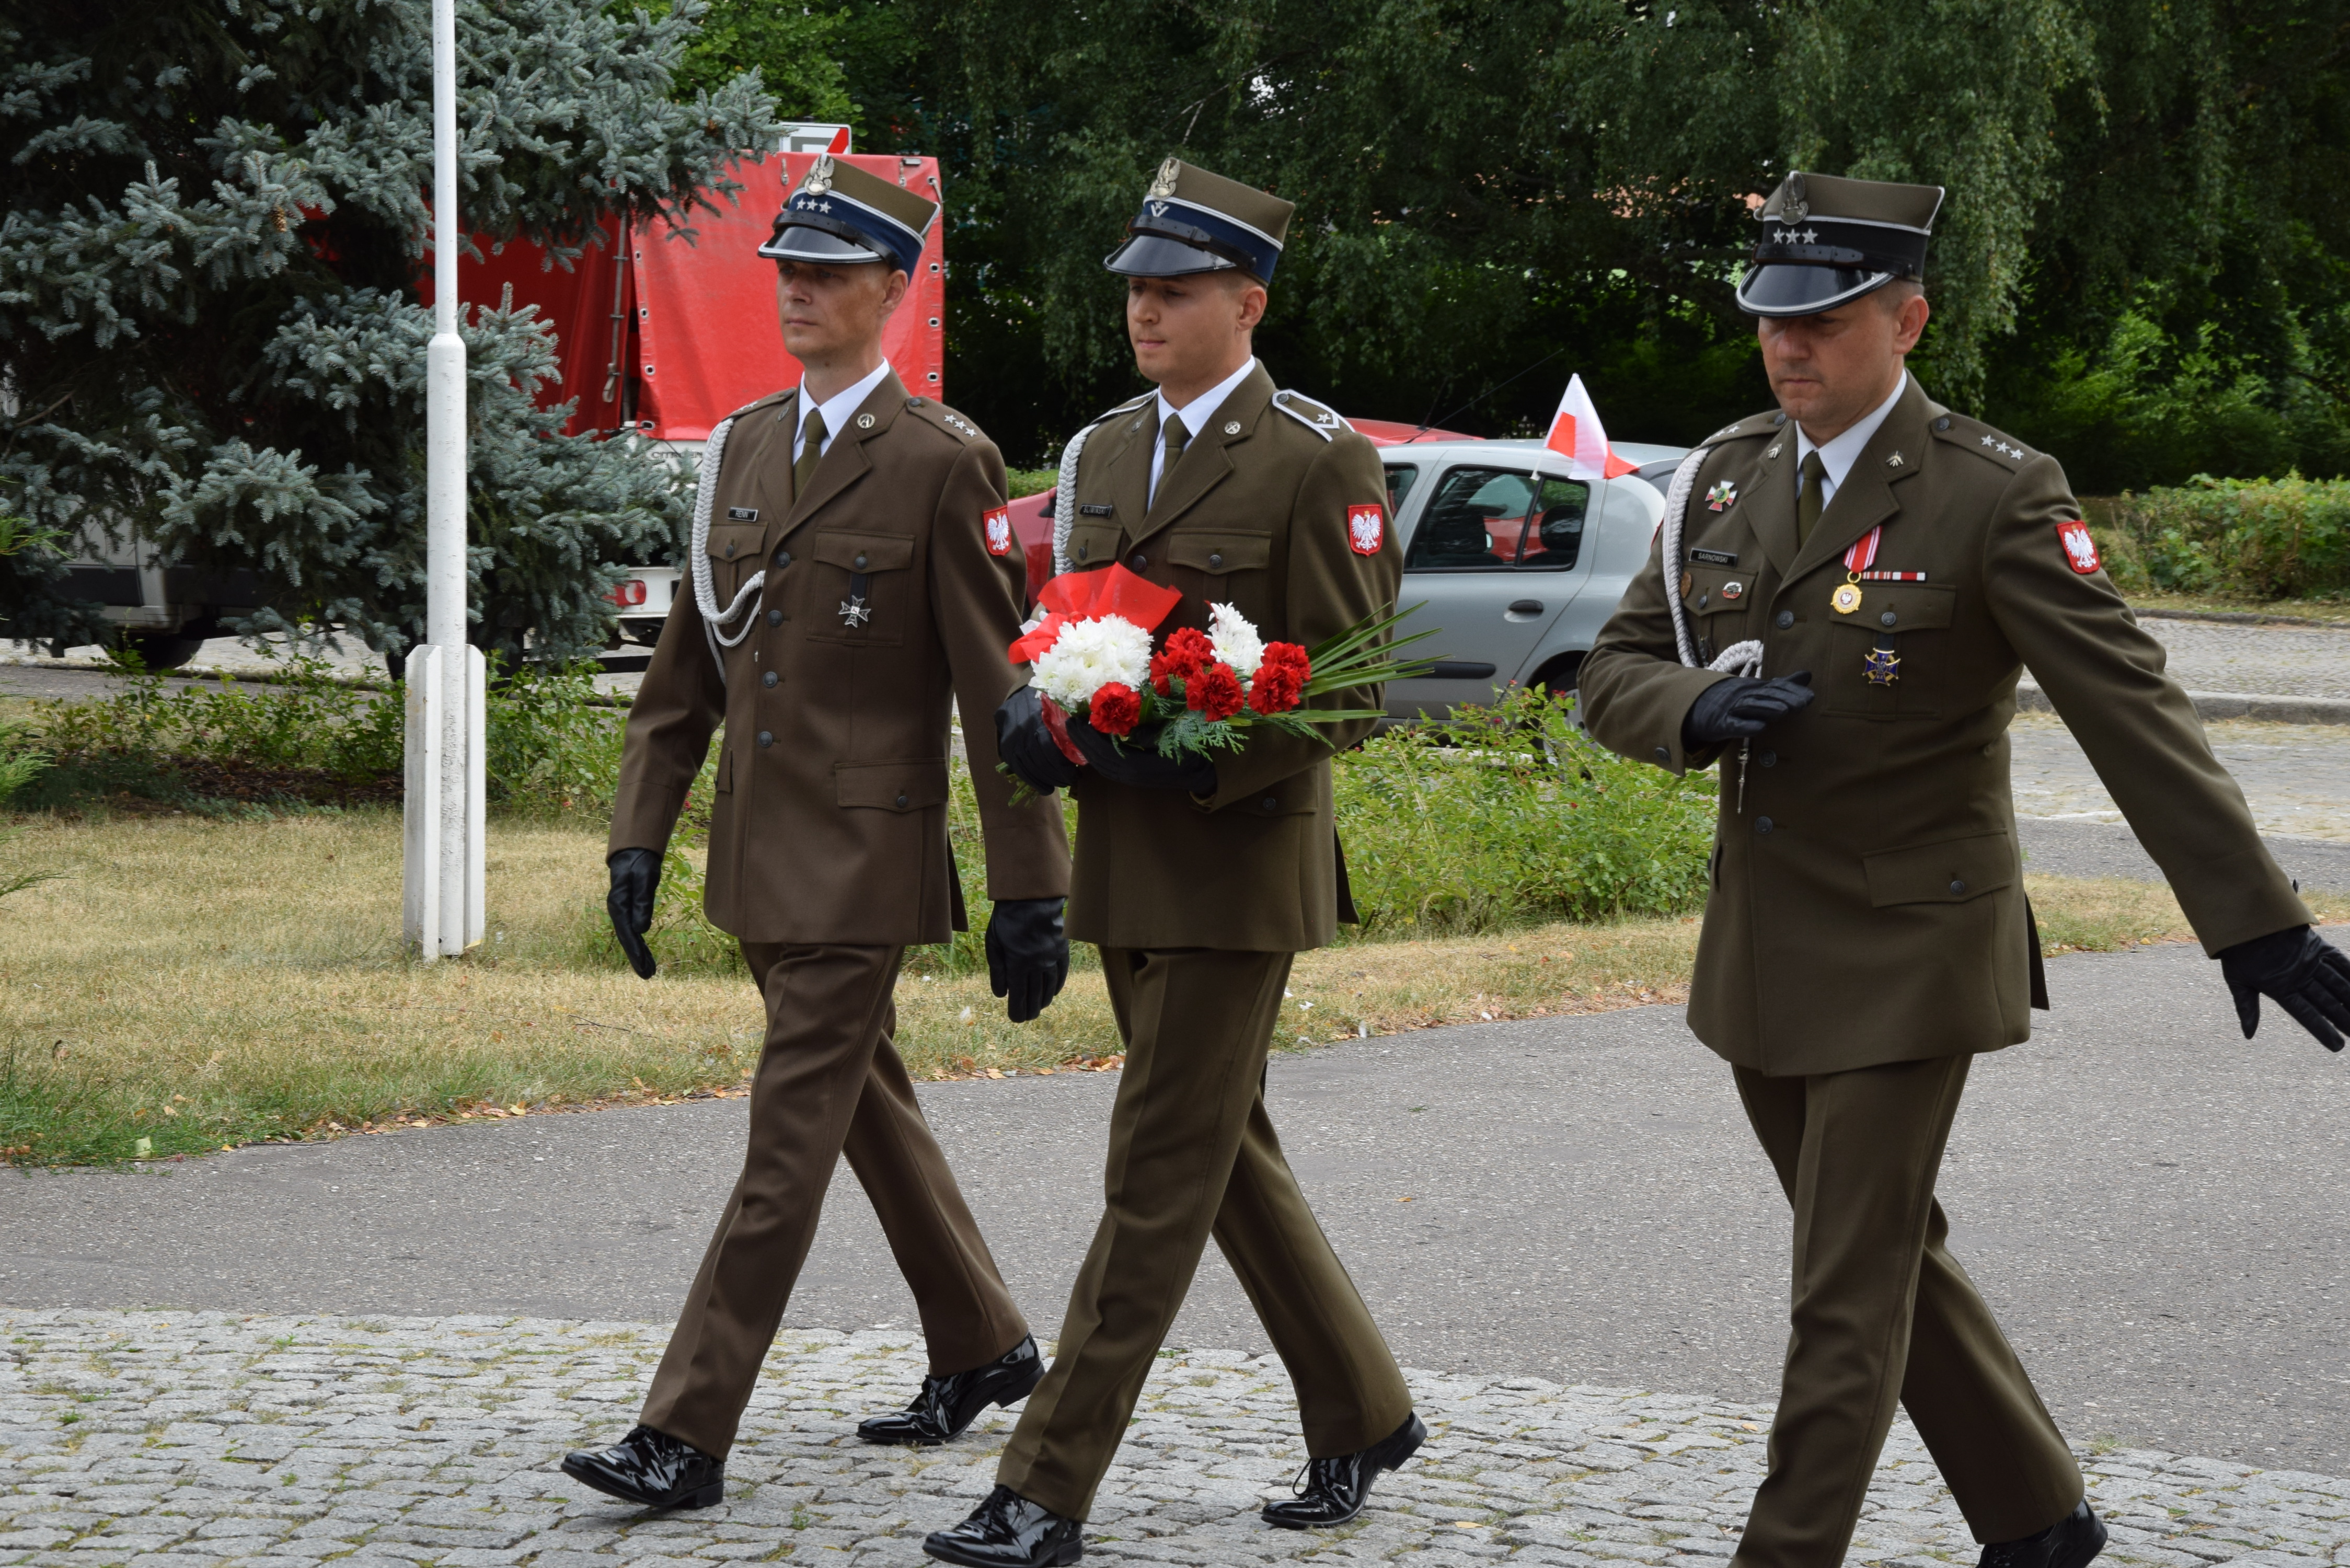 delegacja skłądająca się z 3 żołnierzy maszeruje z kwiatami w stronę pomnika